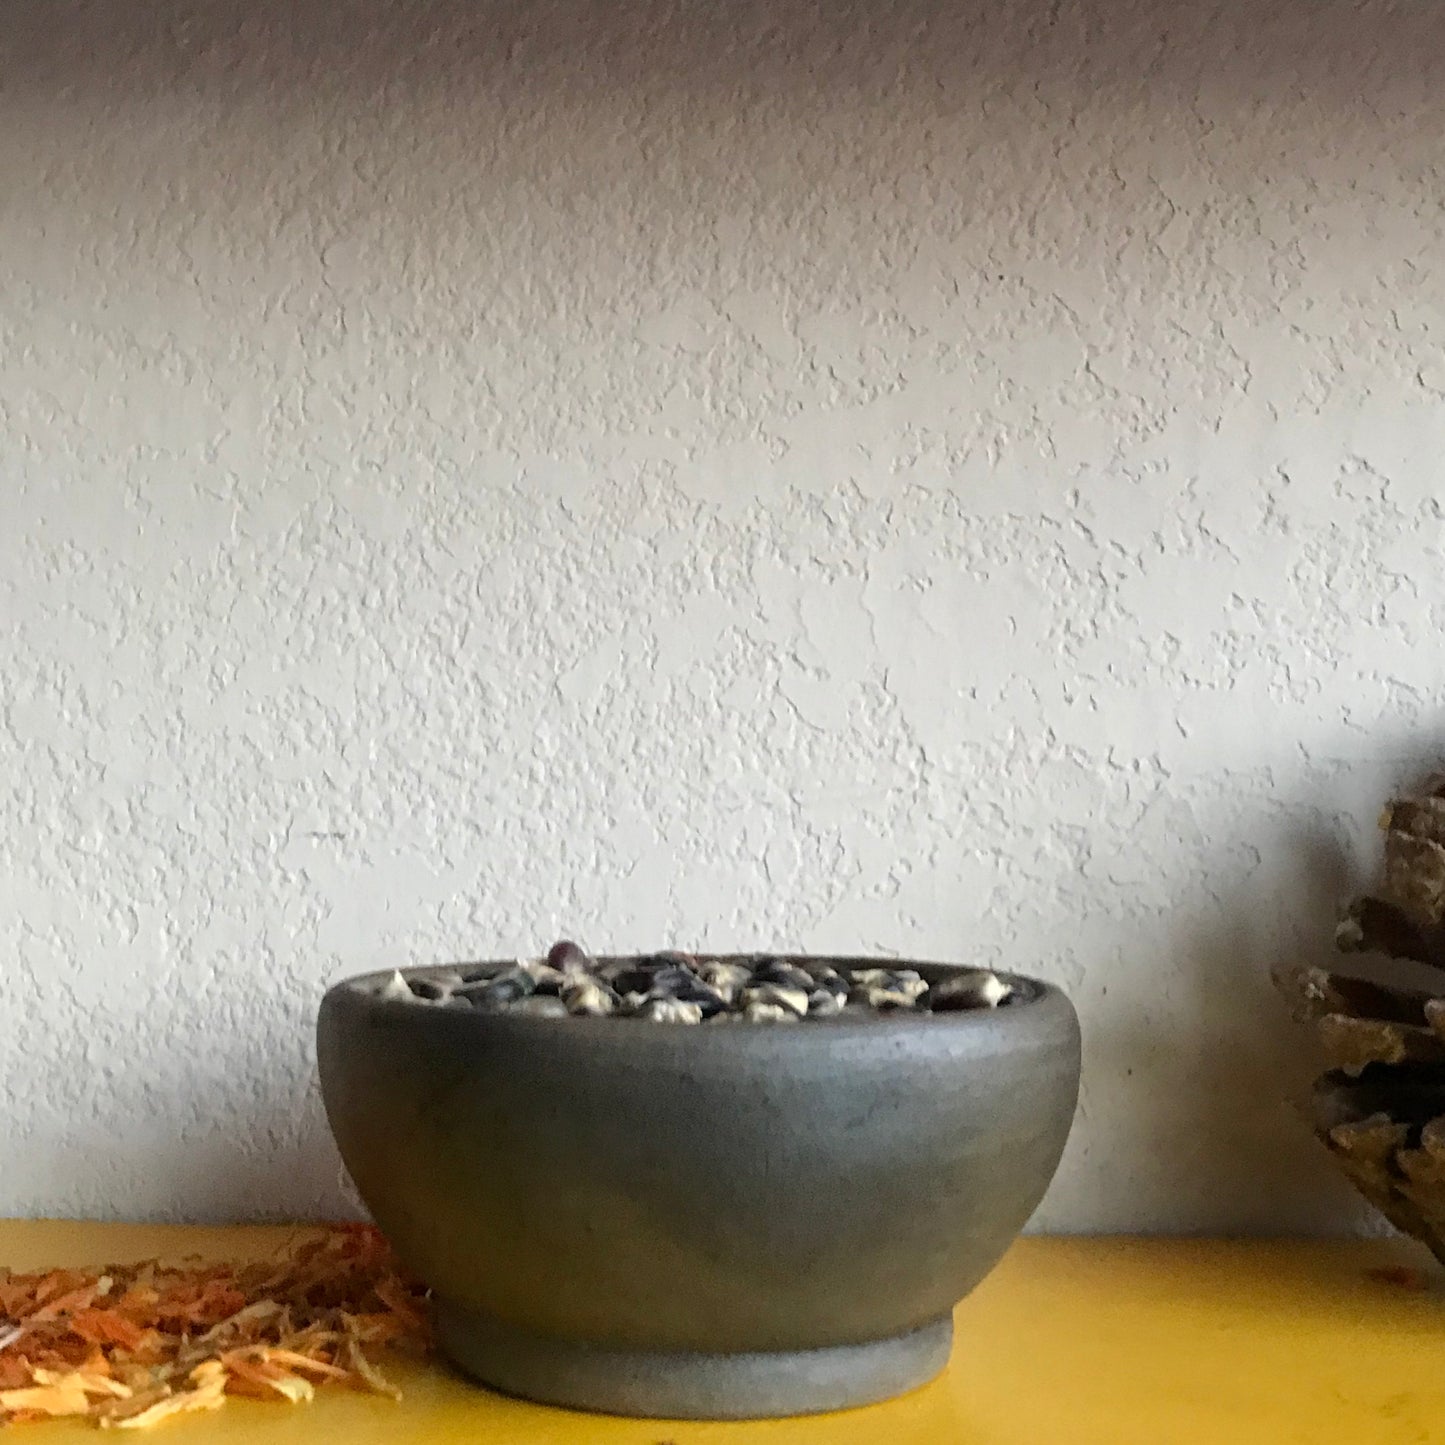 Taller Coatlicue Ceramic Small Round Bowl